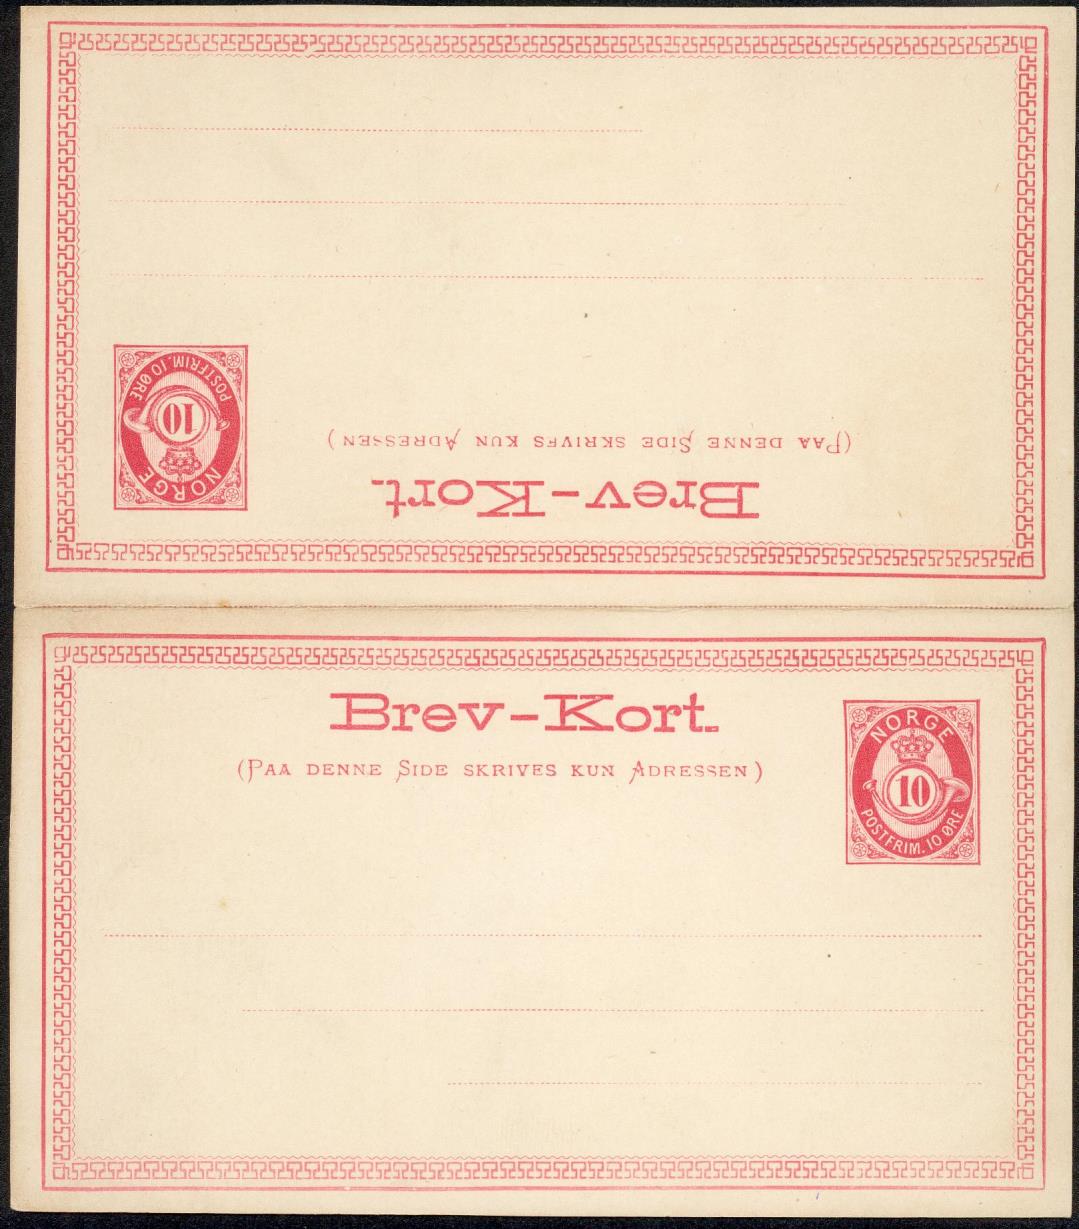 Brevkort dobbelt. Fra 1879 ble det i samsvar med UPUs bestemmelser tillatt å benytte doble kort, dvs avsenders returporto var også betalt.